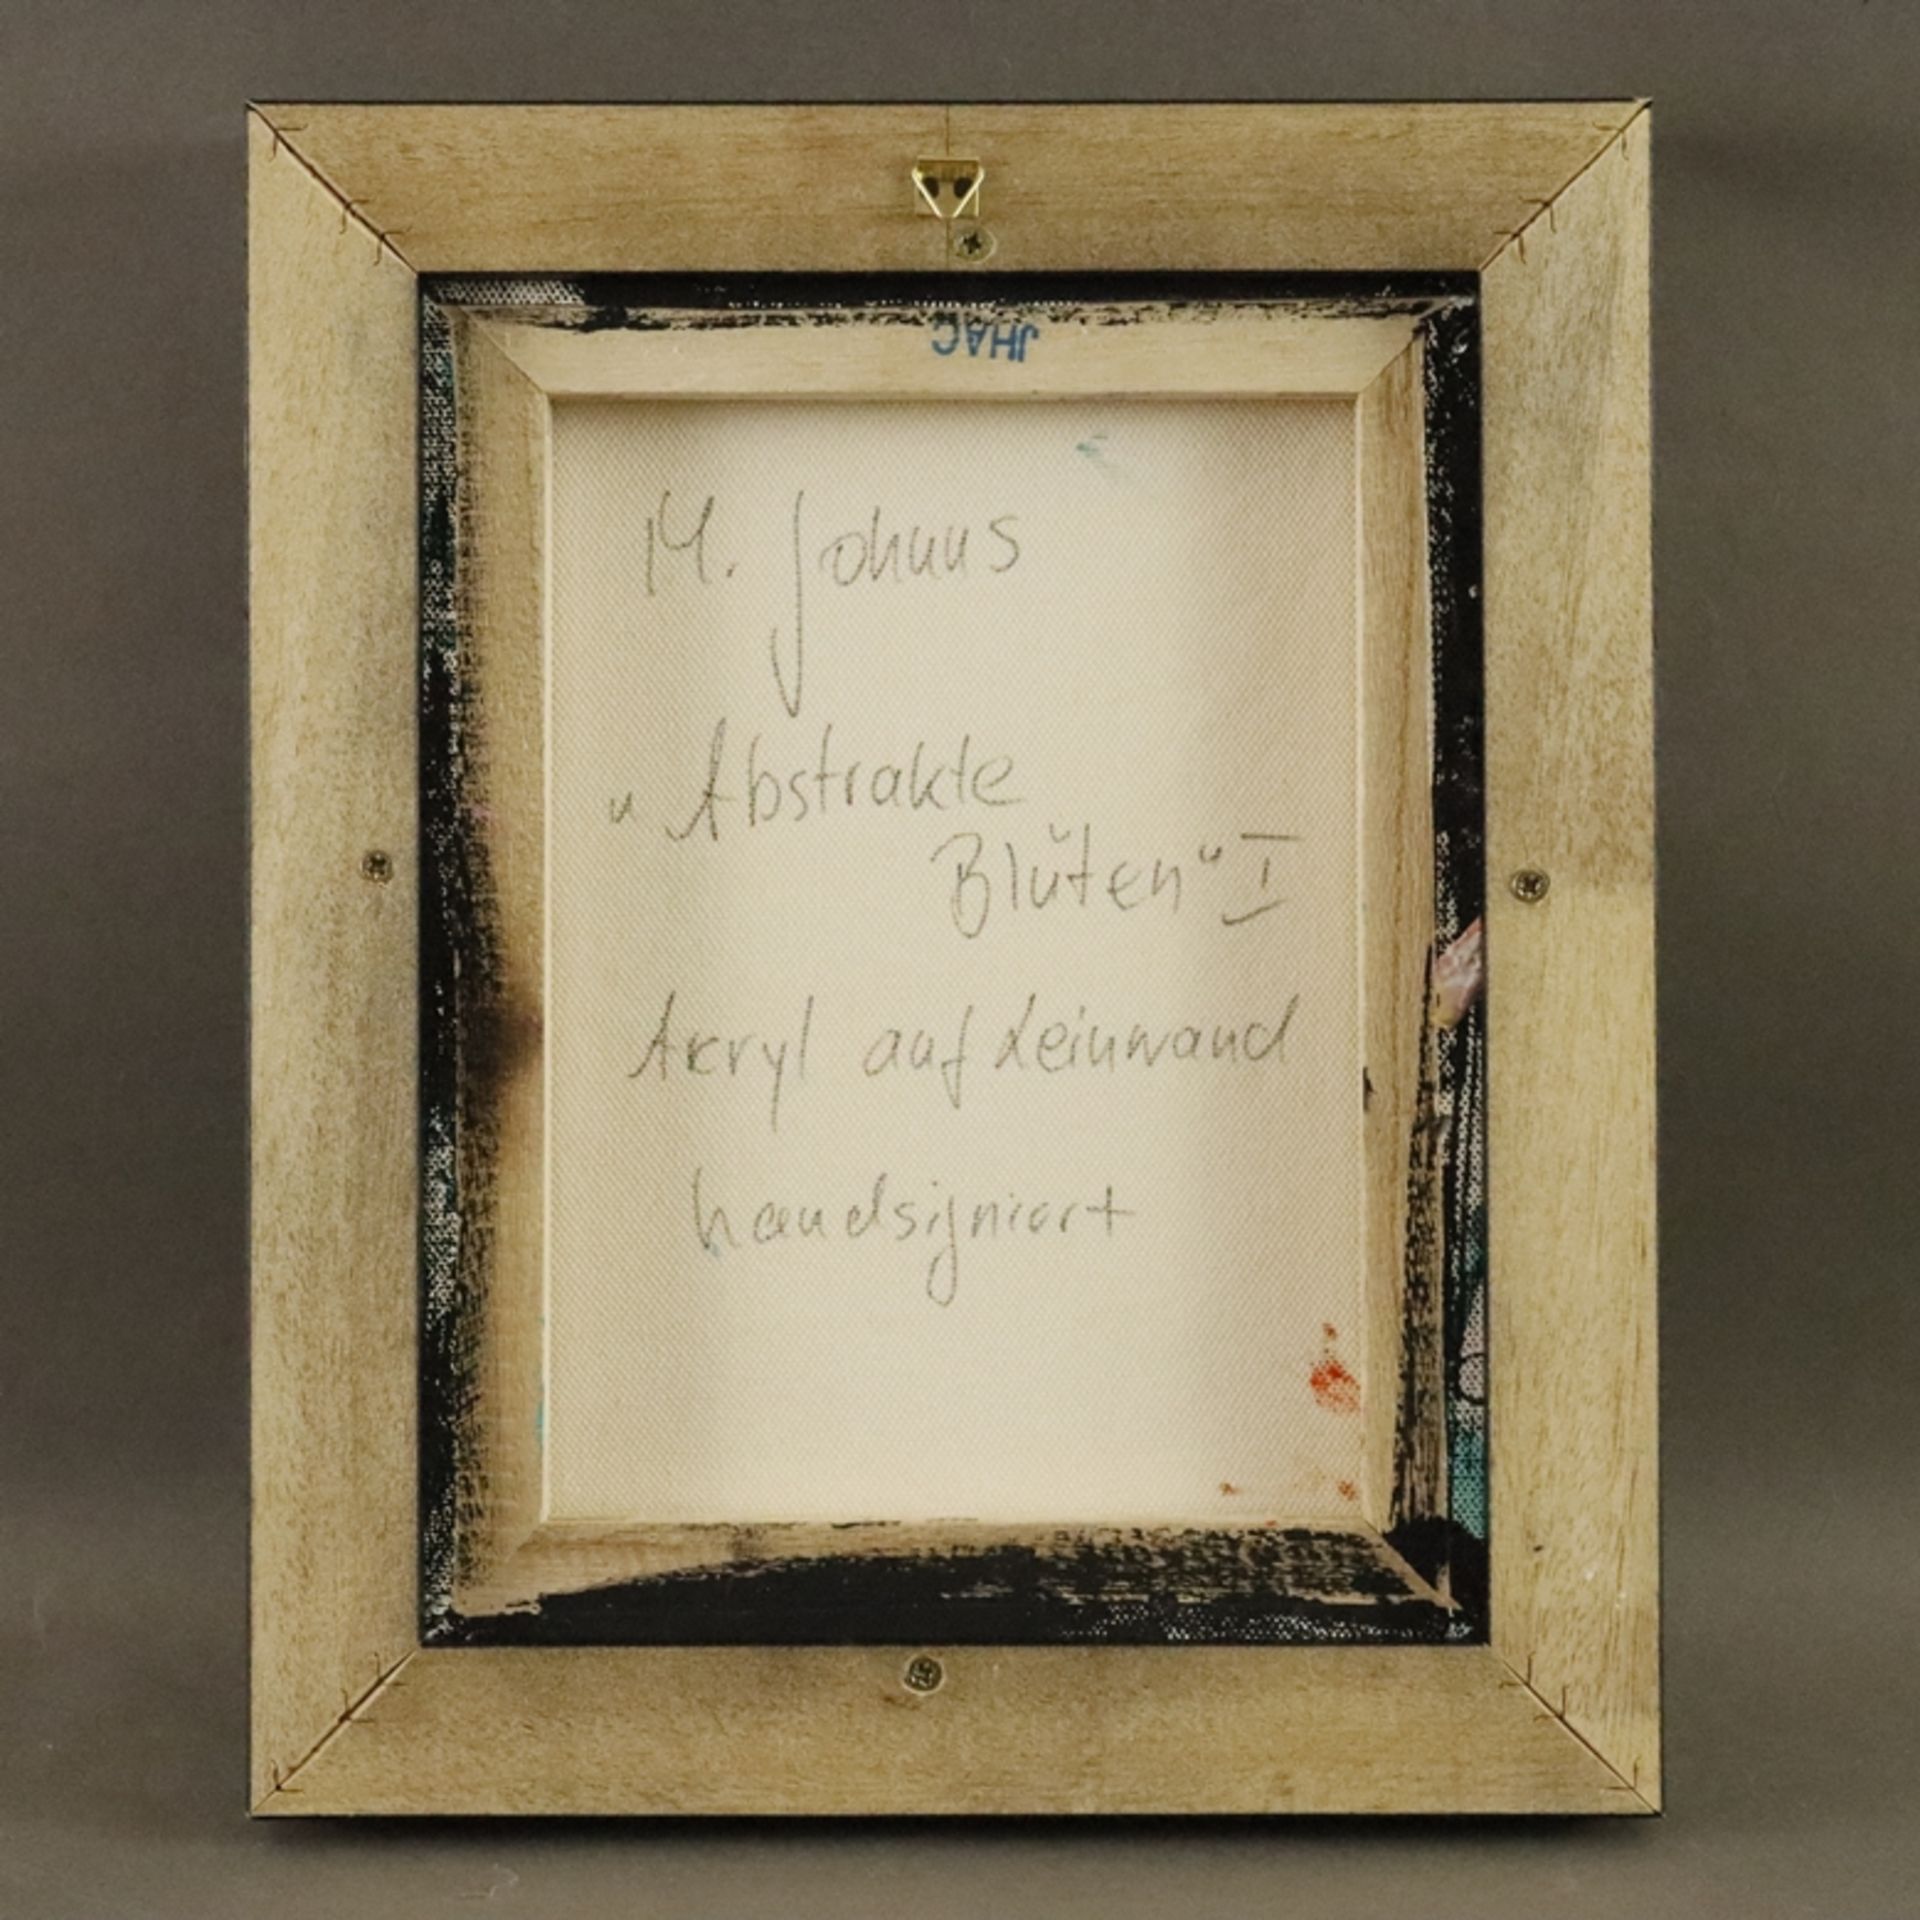 Johnns, M. - "Abstrakte Blüten I", Acryl auf Leinwand, unten links handsigniert "M. Johnns", ca. 30 - Bild 5 aus 5